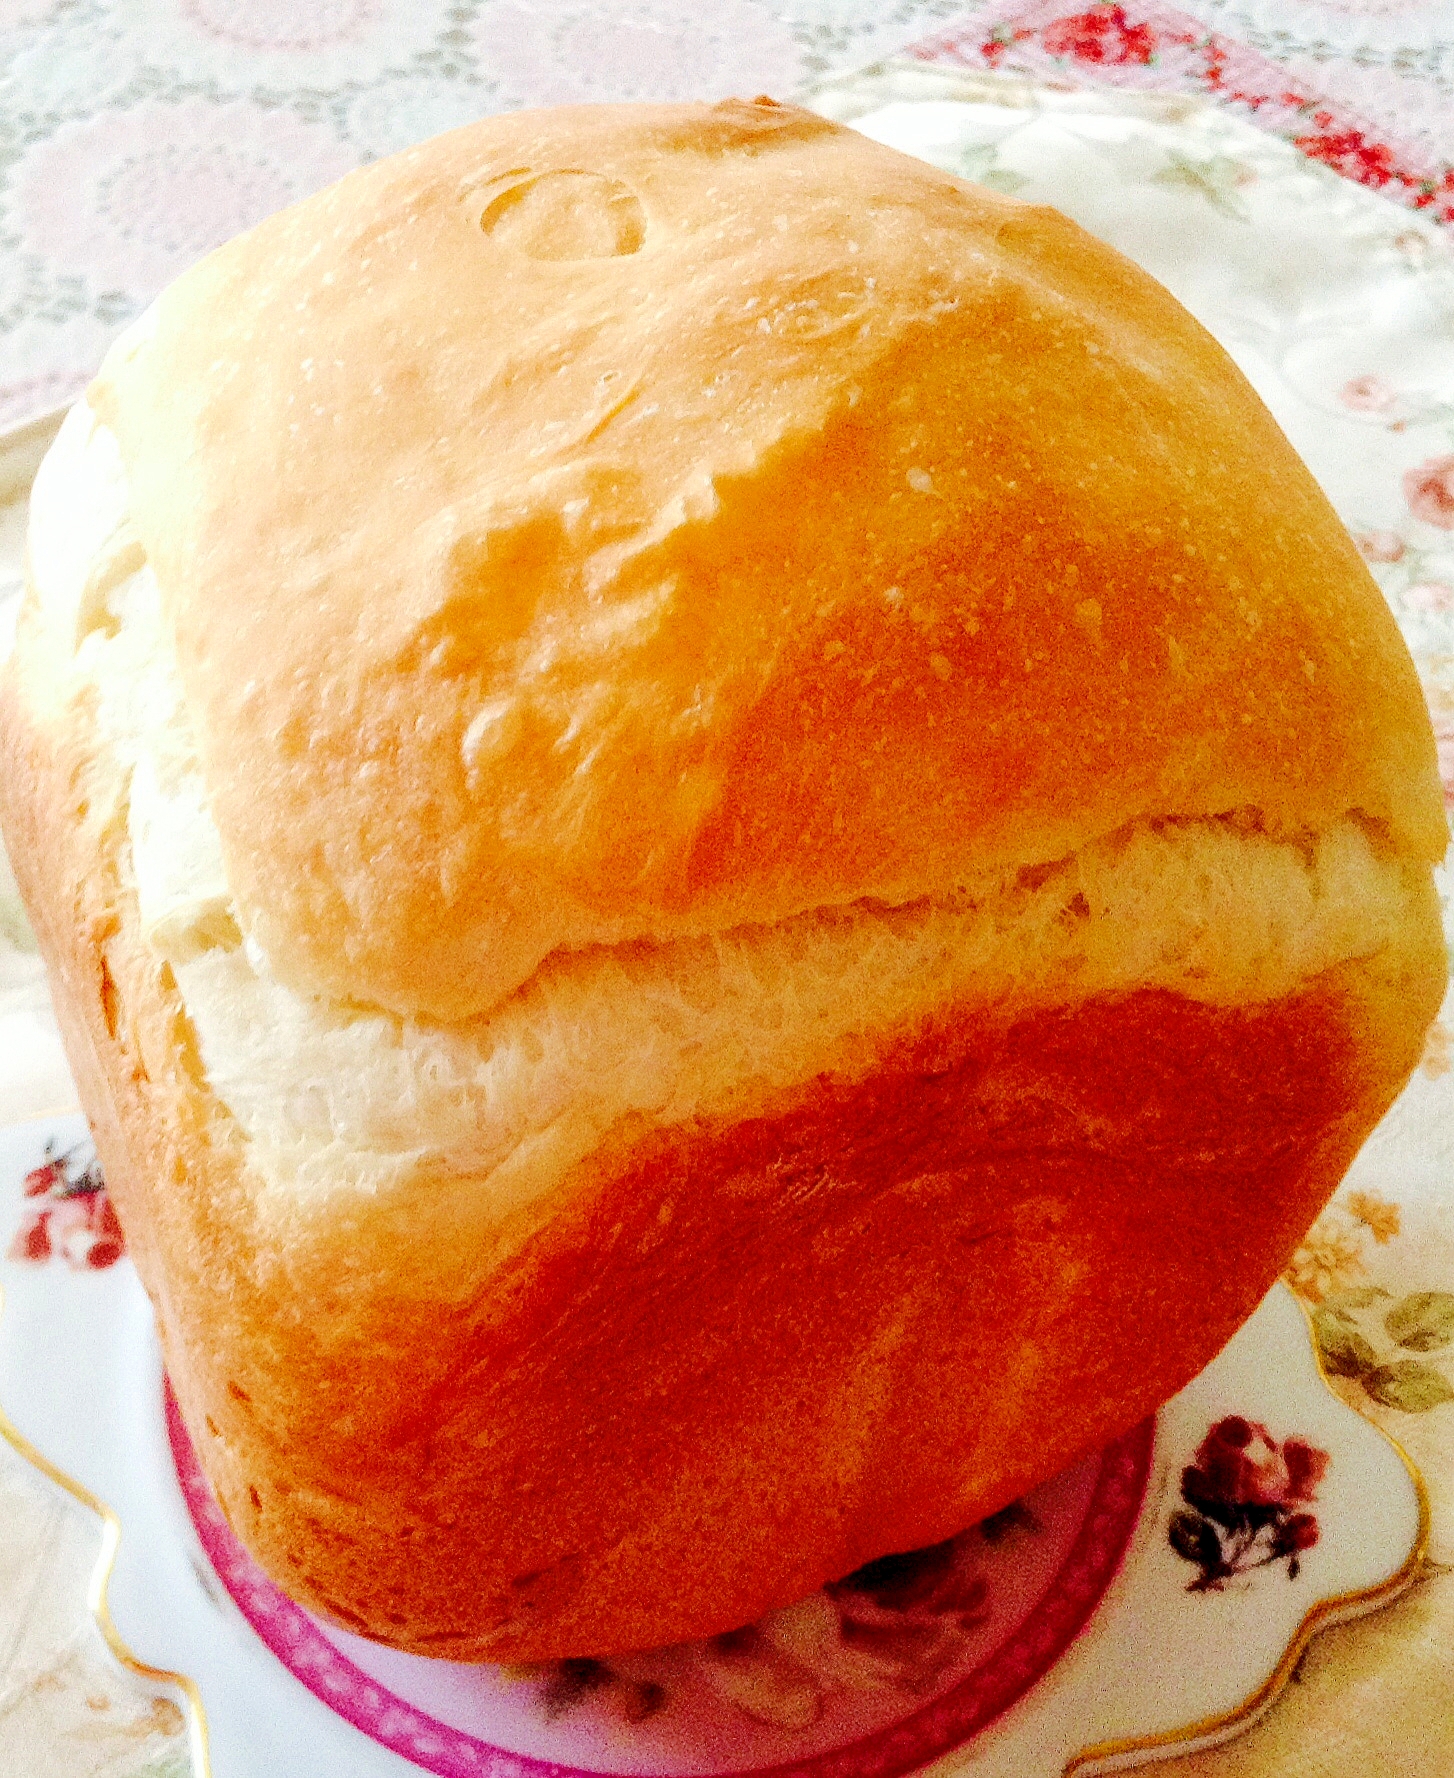 早焼きで美味しい❤︎上新粉入り食パン